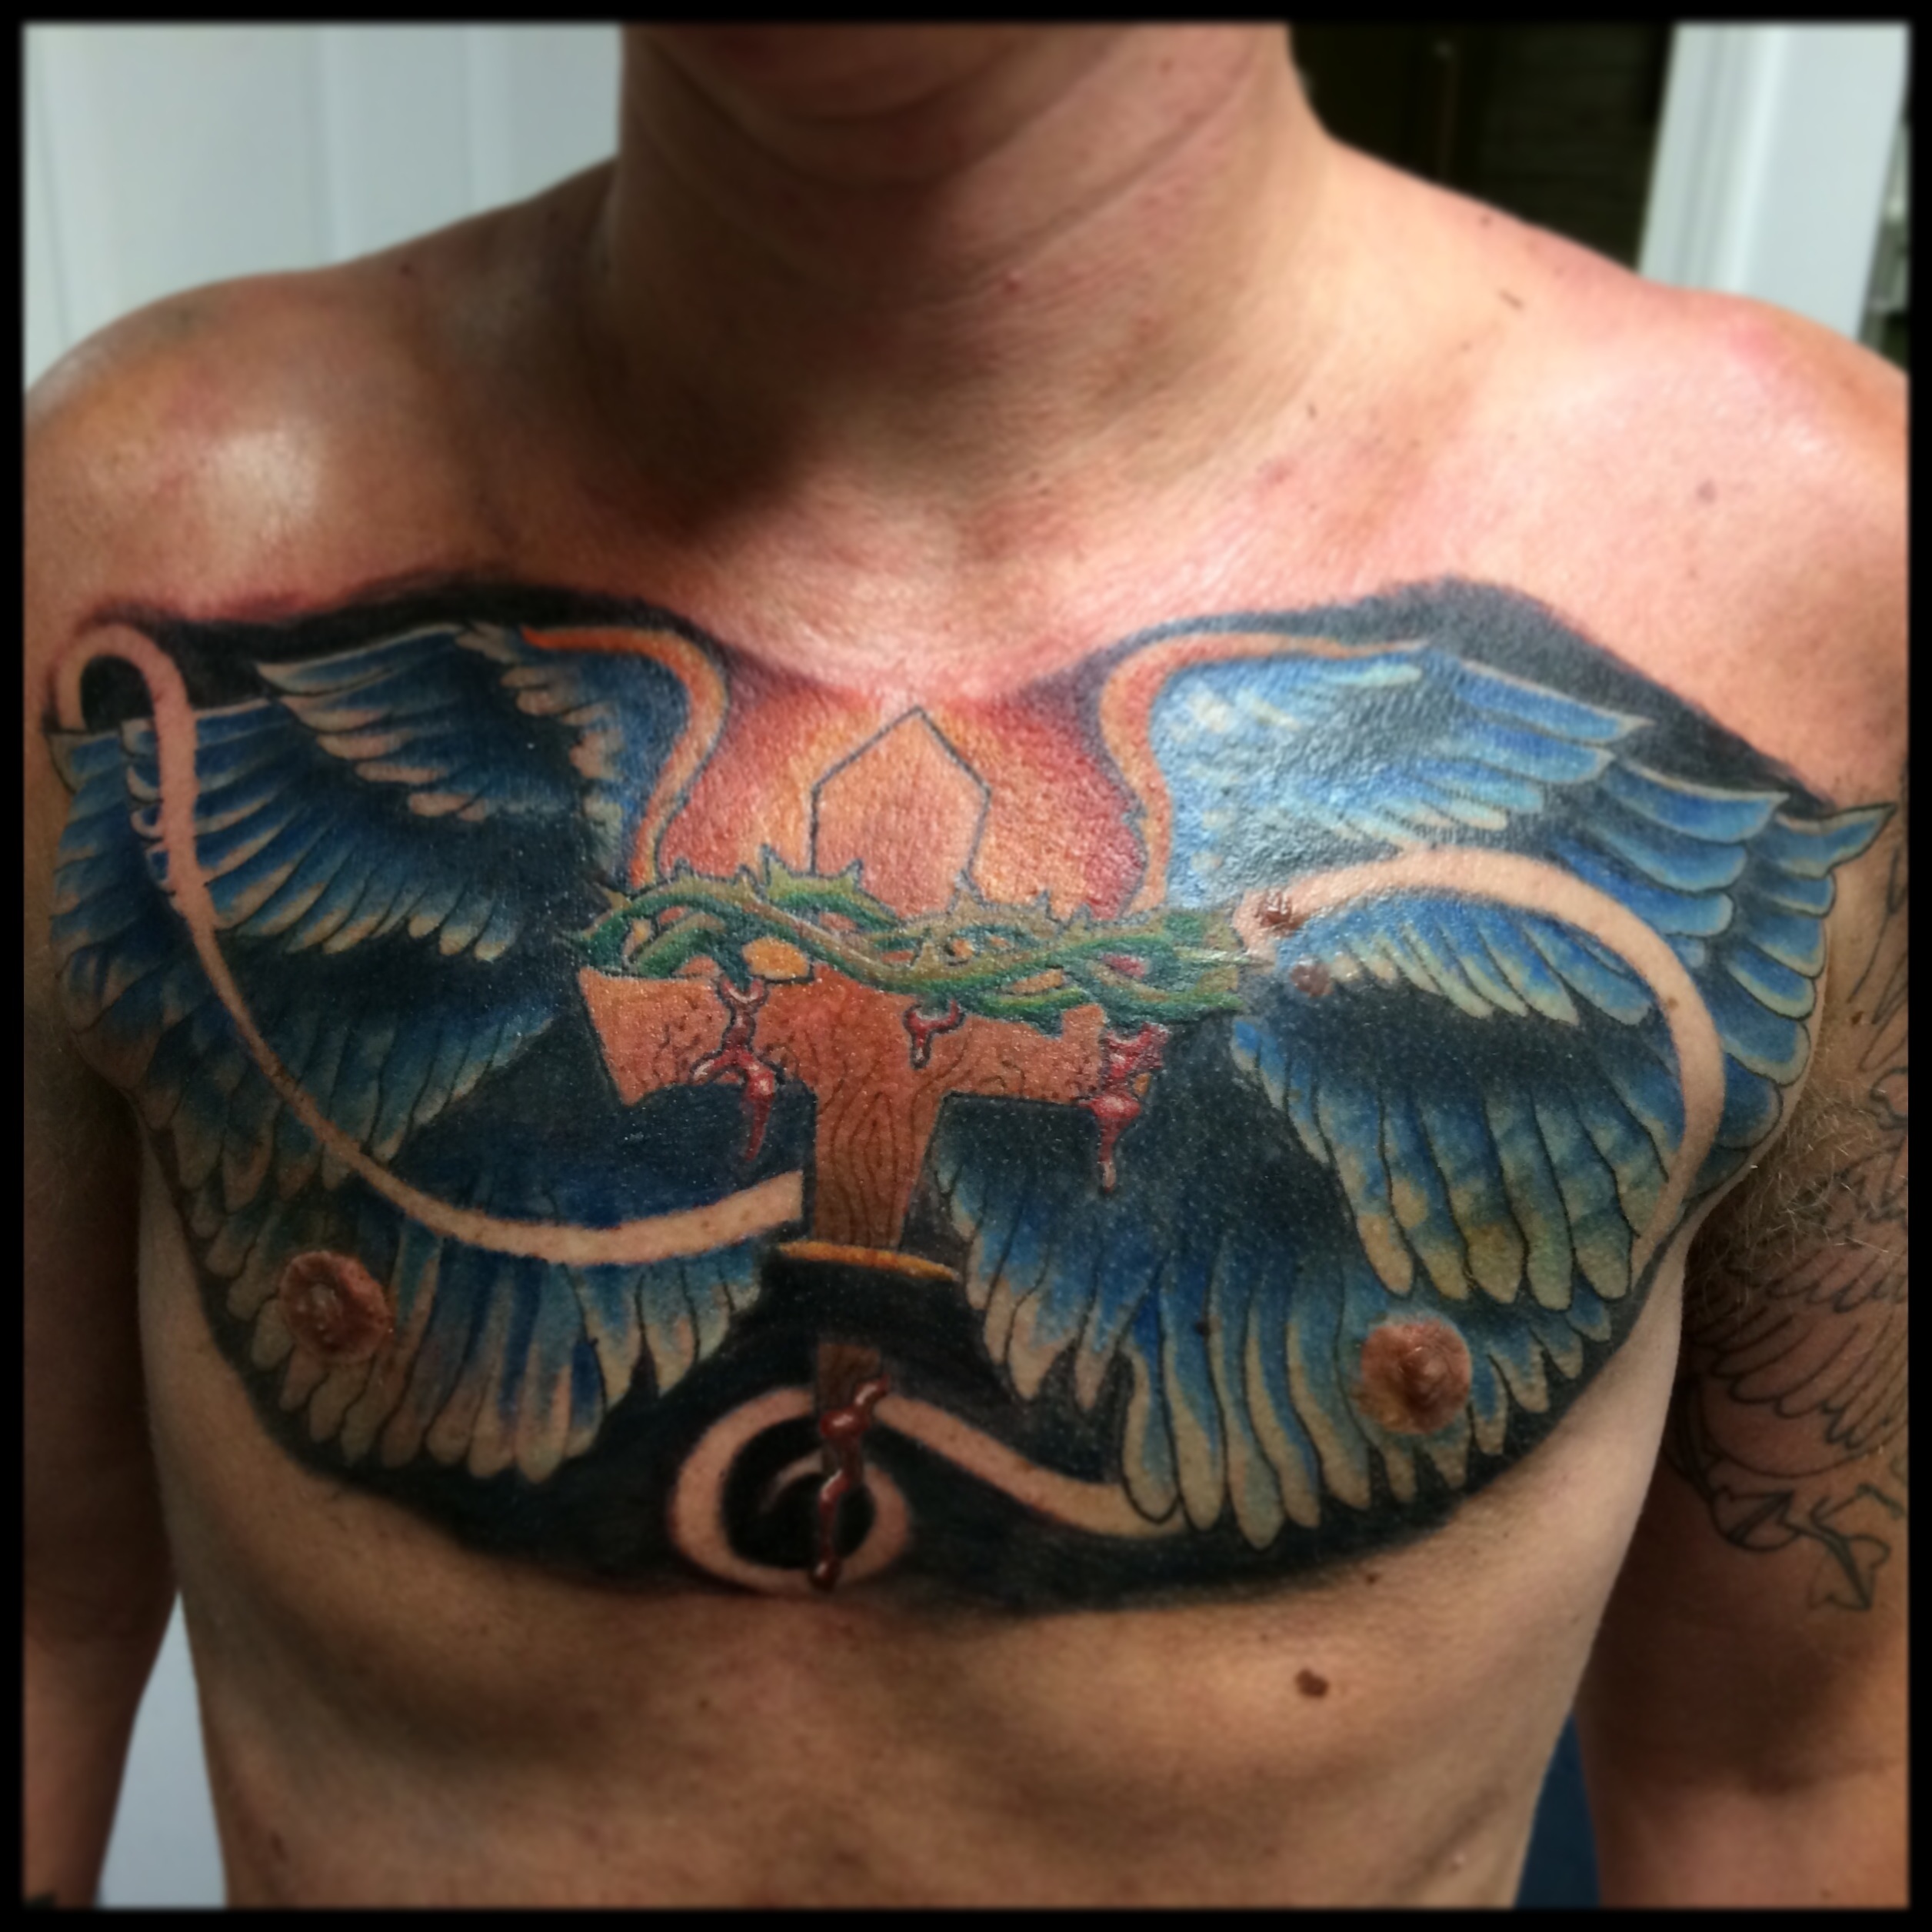 Lost City Tattoo — #boof #tattooer #skull #wings #chesttattoo (at...